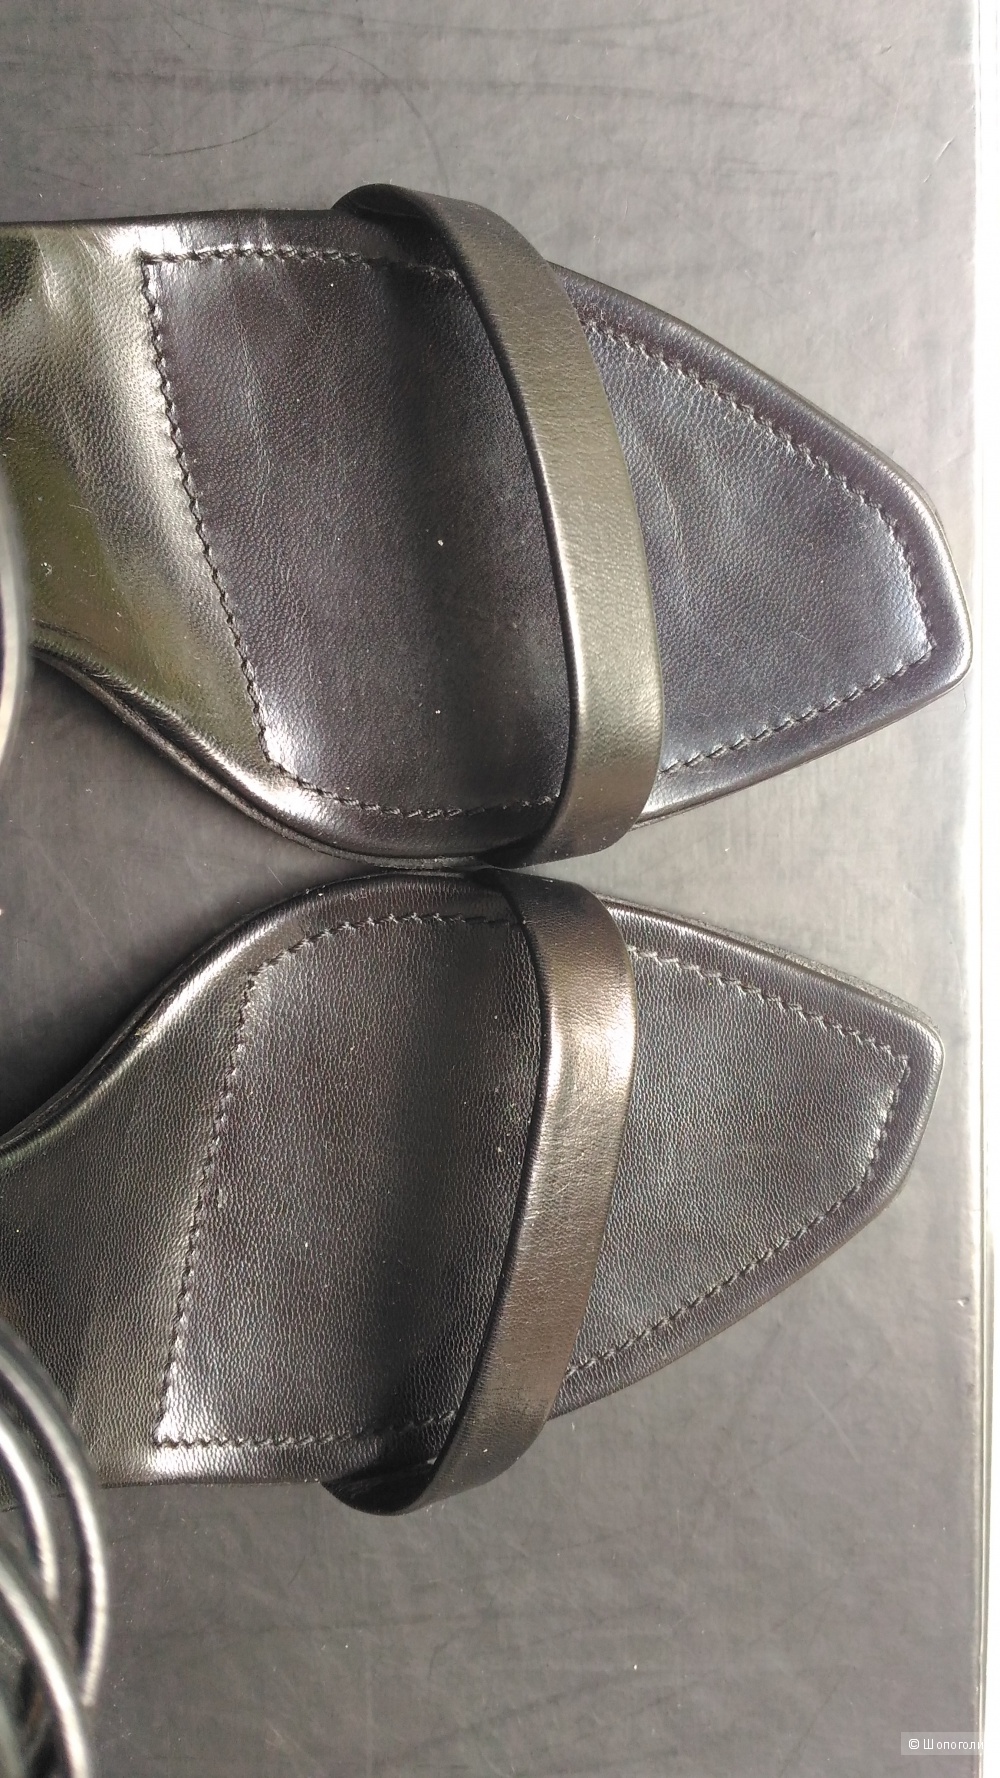 Босоножки, летние туфли, Sergio Rossi, оригинал, Италия, на 38 размер